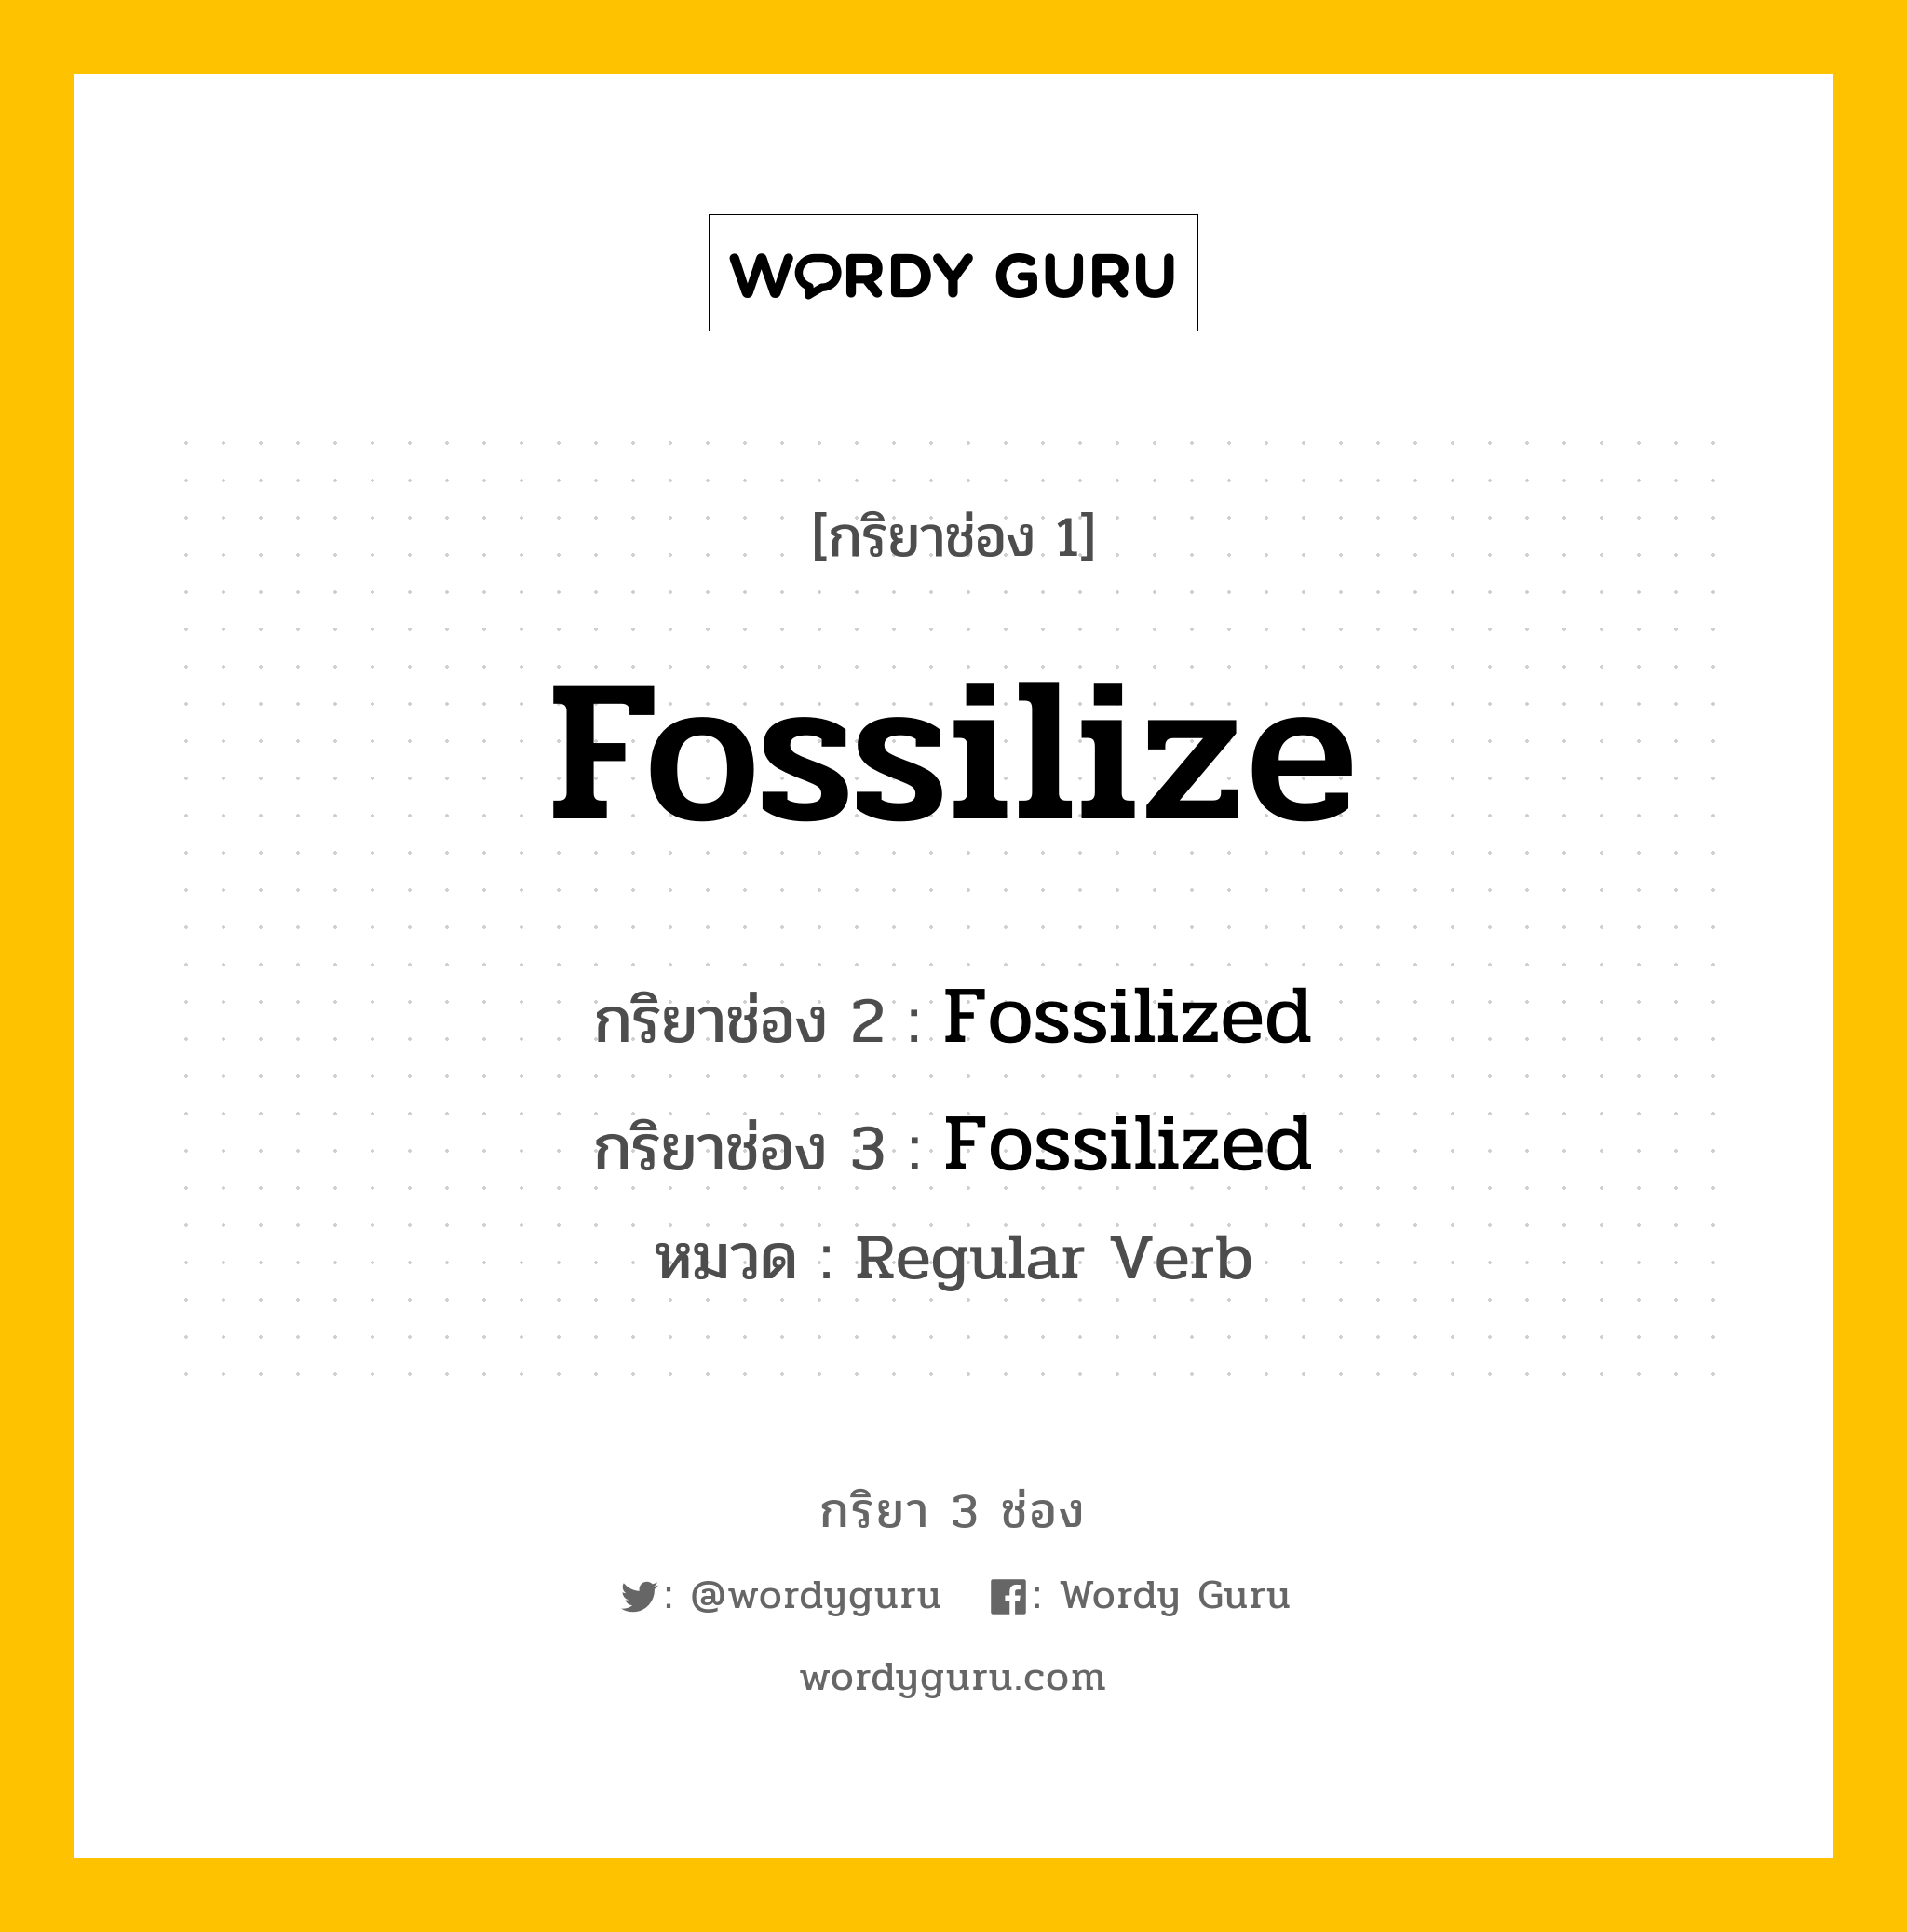 กริยา 3 ช่อง: Fossilize ช่อง 2 Fossilize ช่อง 3 คืออะไร, กริยาช่อง 1 Fossilize กริยาช่อง 2 Fossilized กริยาช่อง 3 Fossilized หมวด Regular Verb หมวด Regular Verb